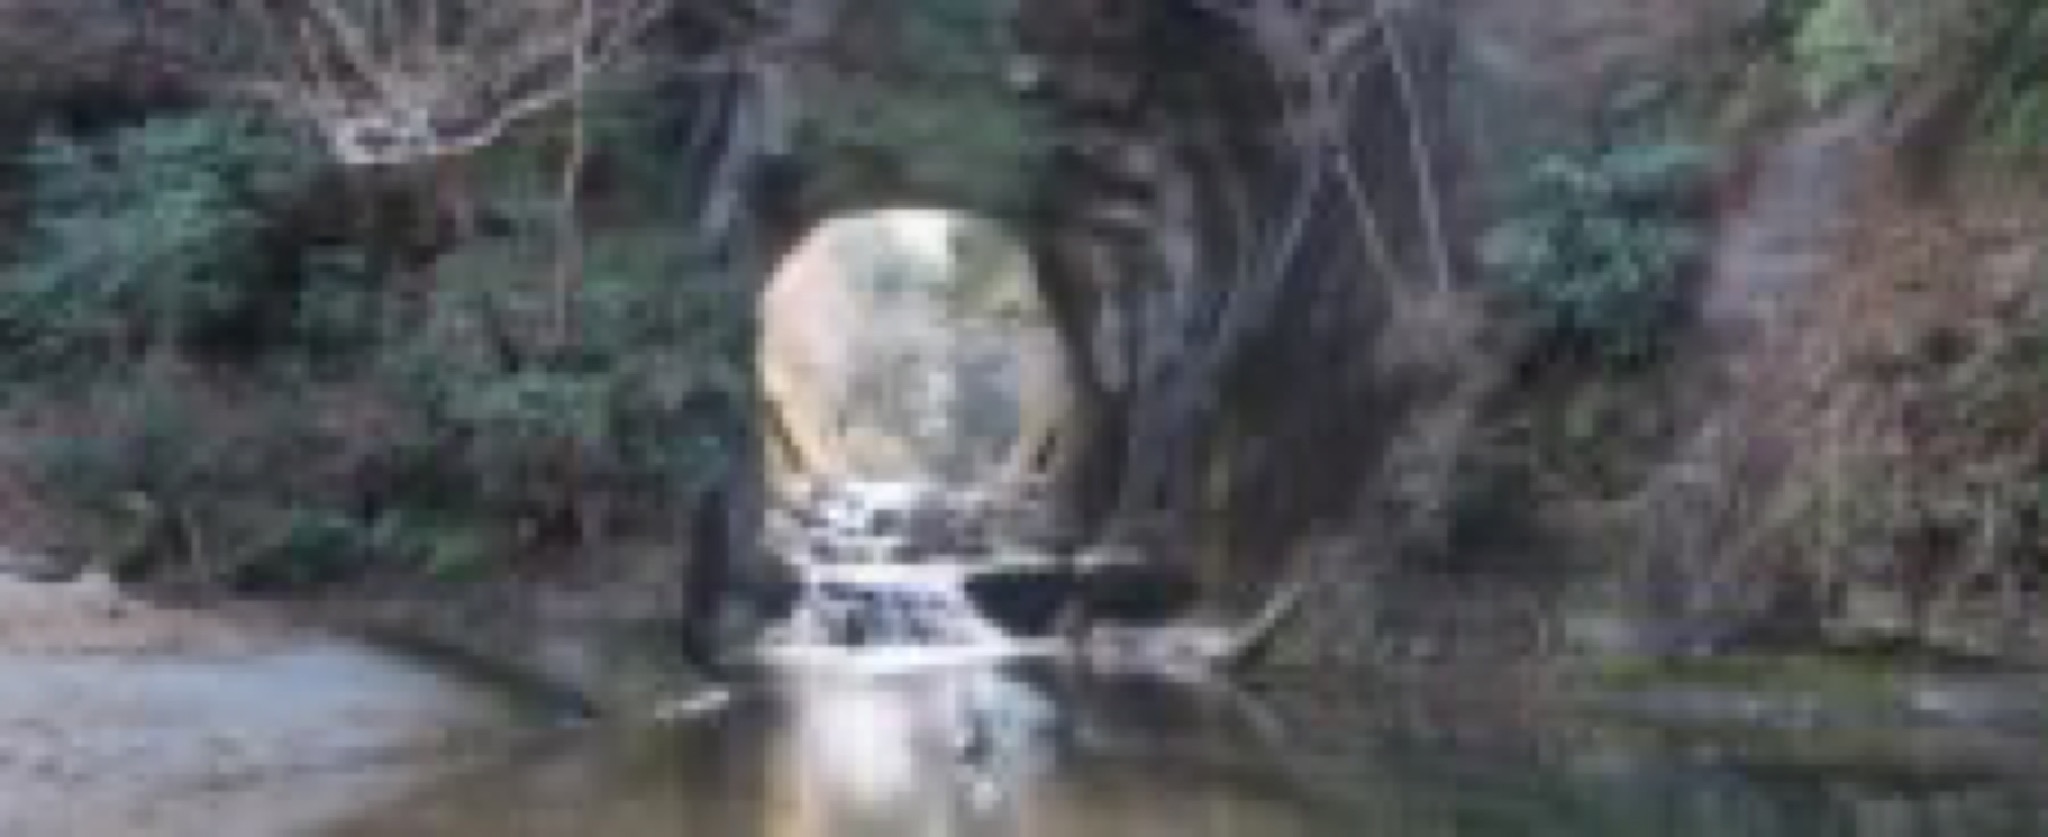 kameiwa cave